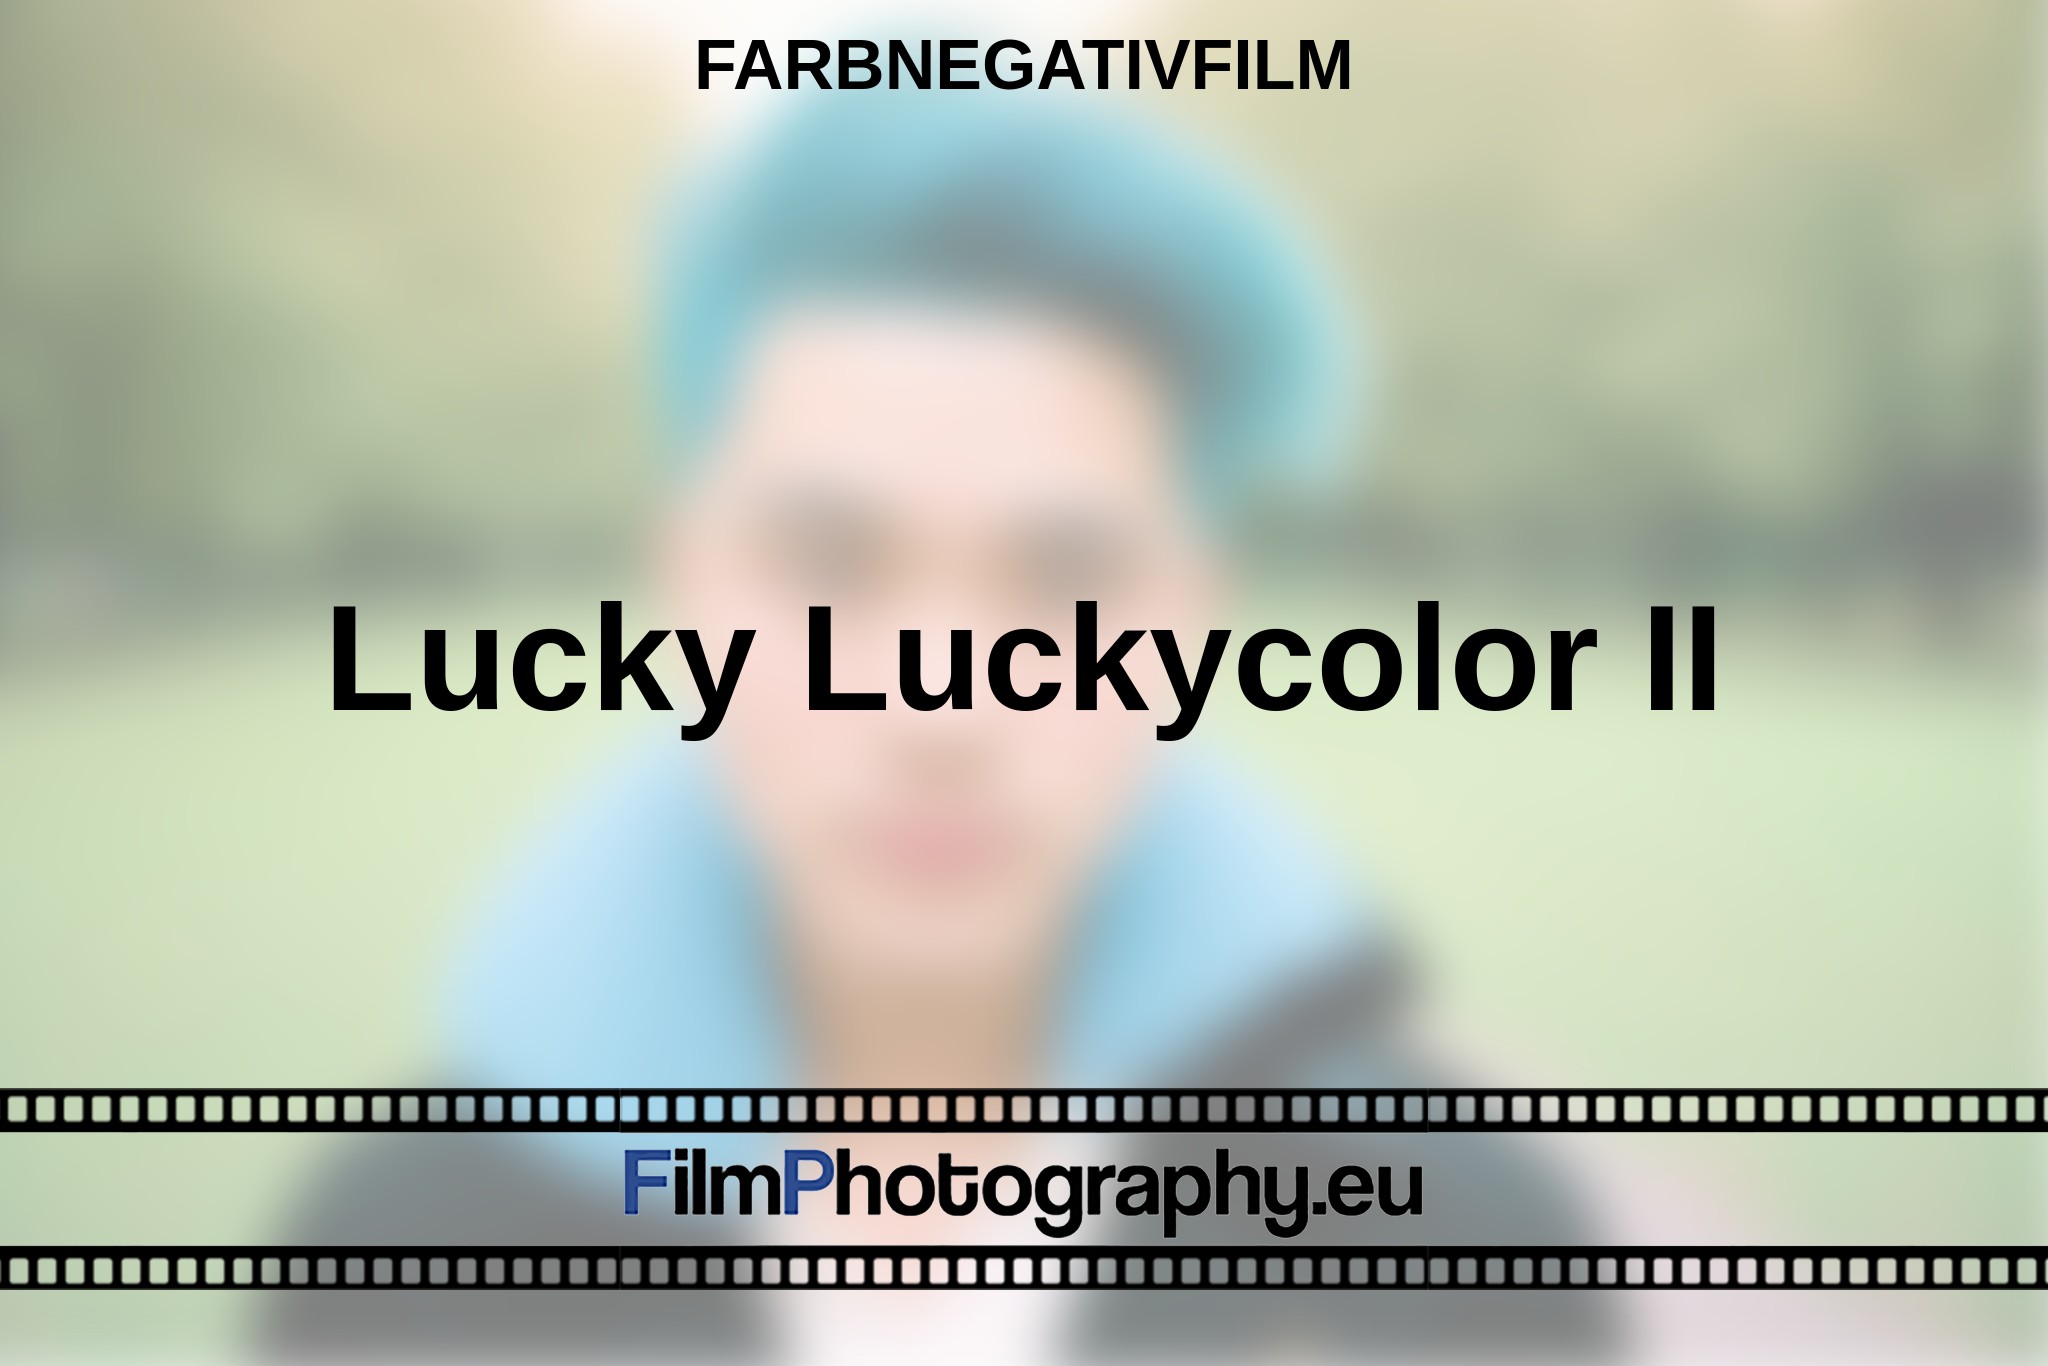 lucky-luckycolor-ii-farbnegativfilm-bnv.jpg